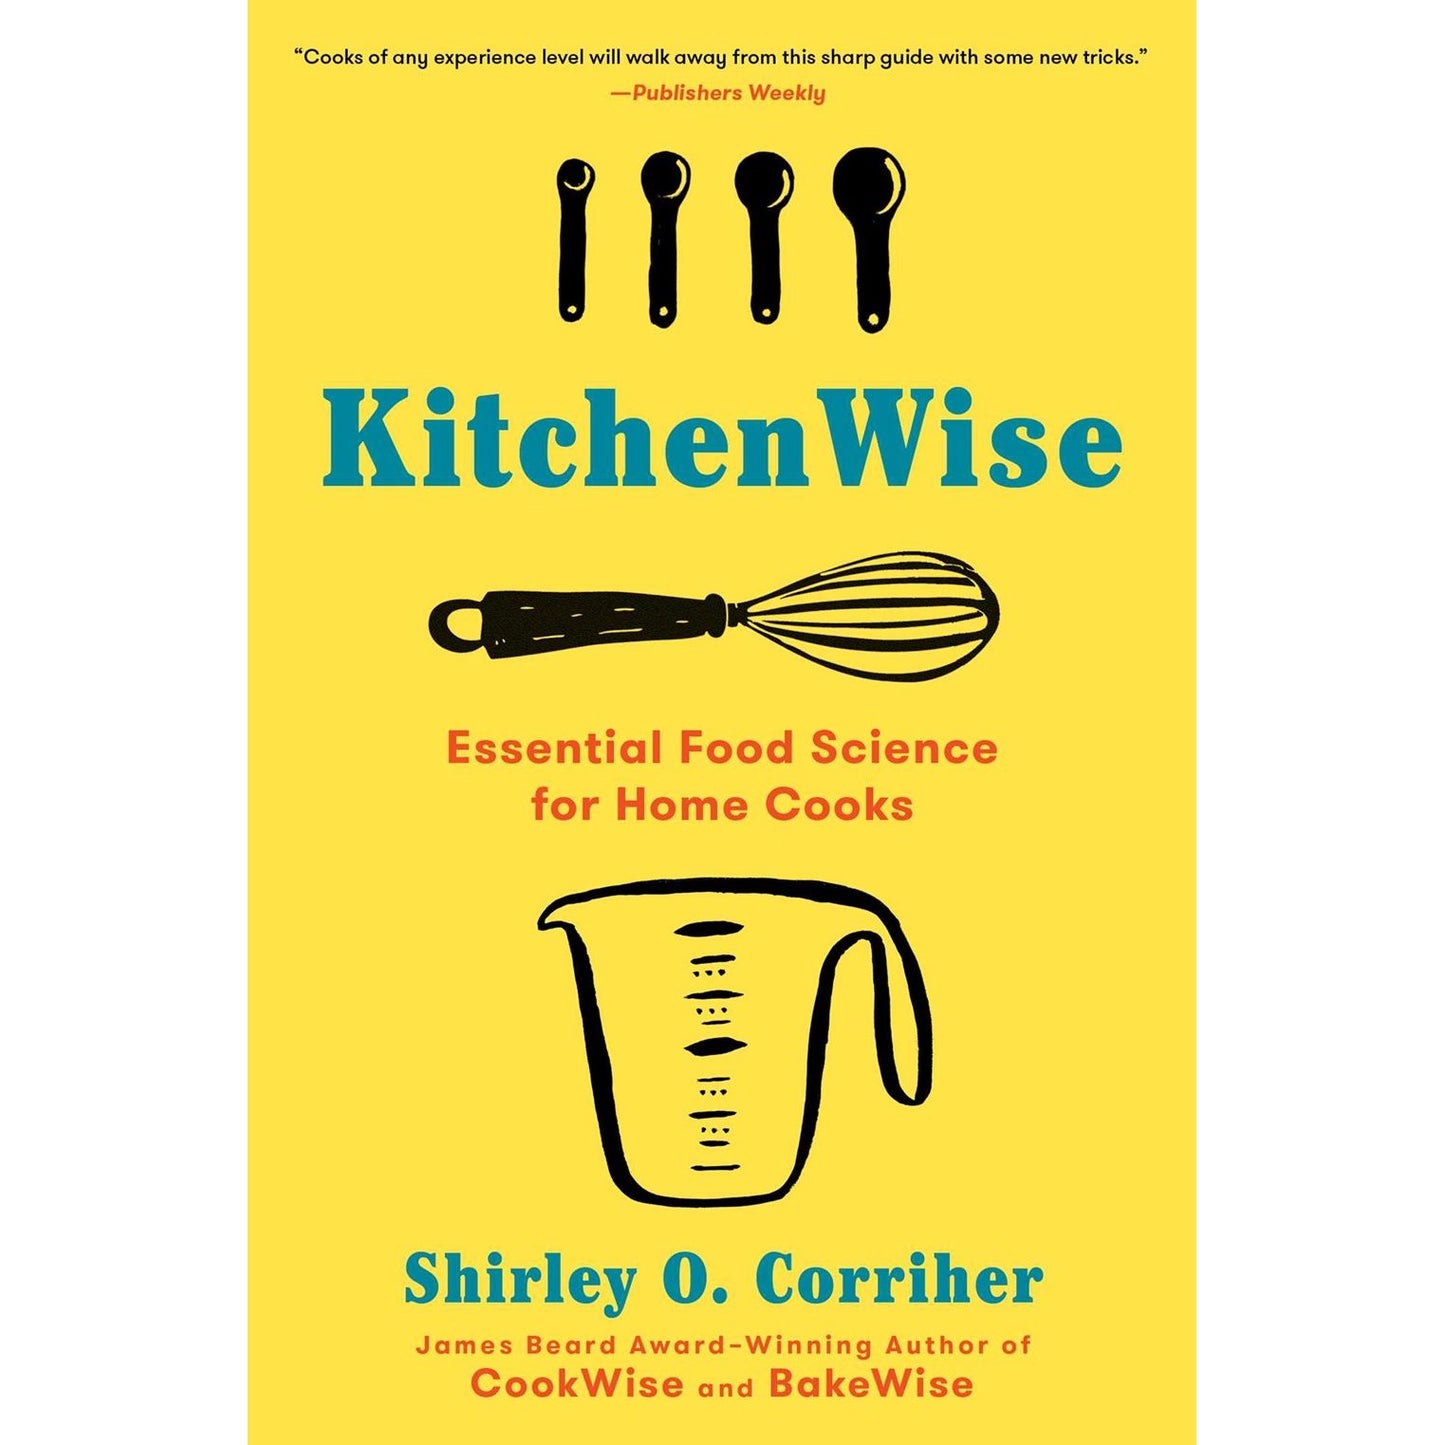 KitchenWise (Shirley O. Corriher)